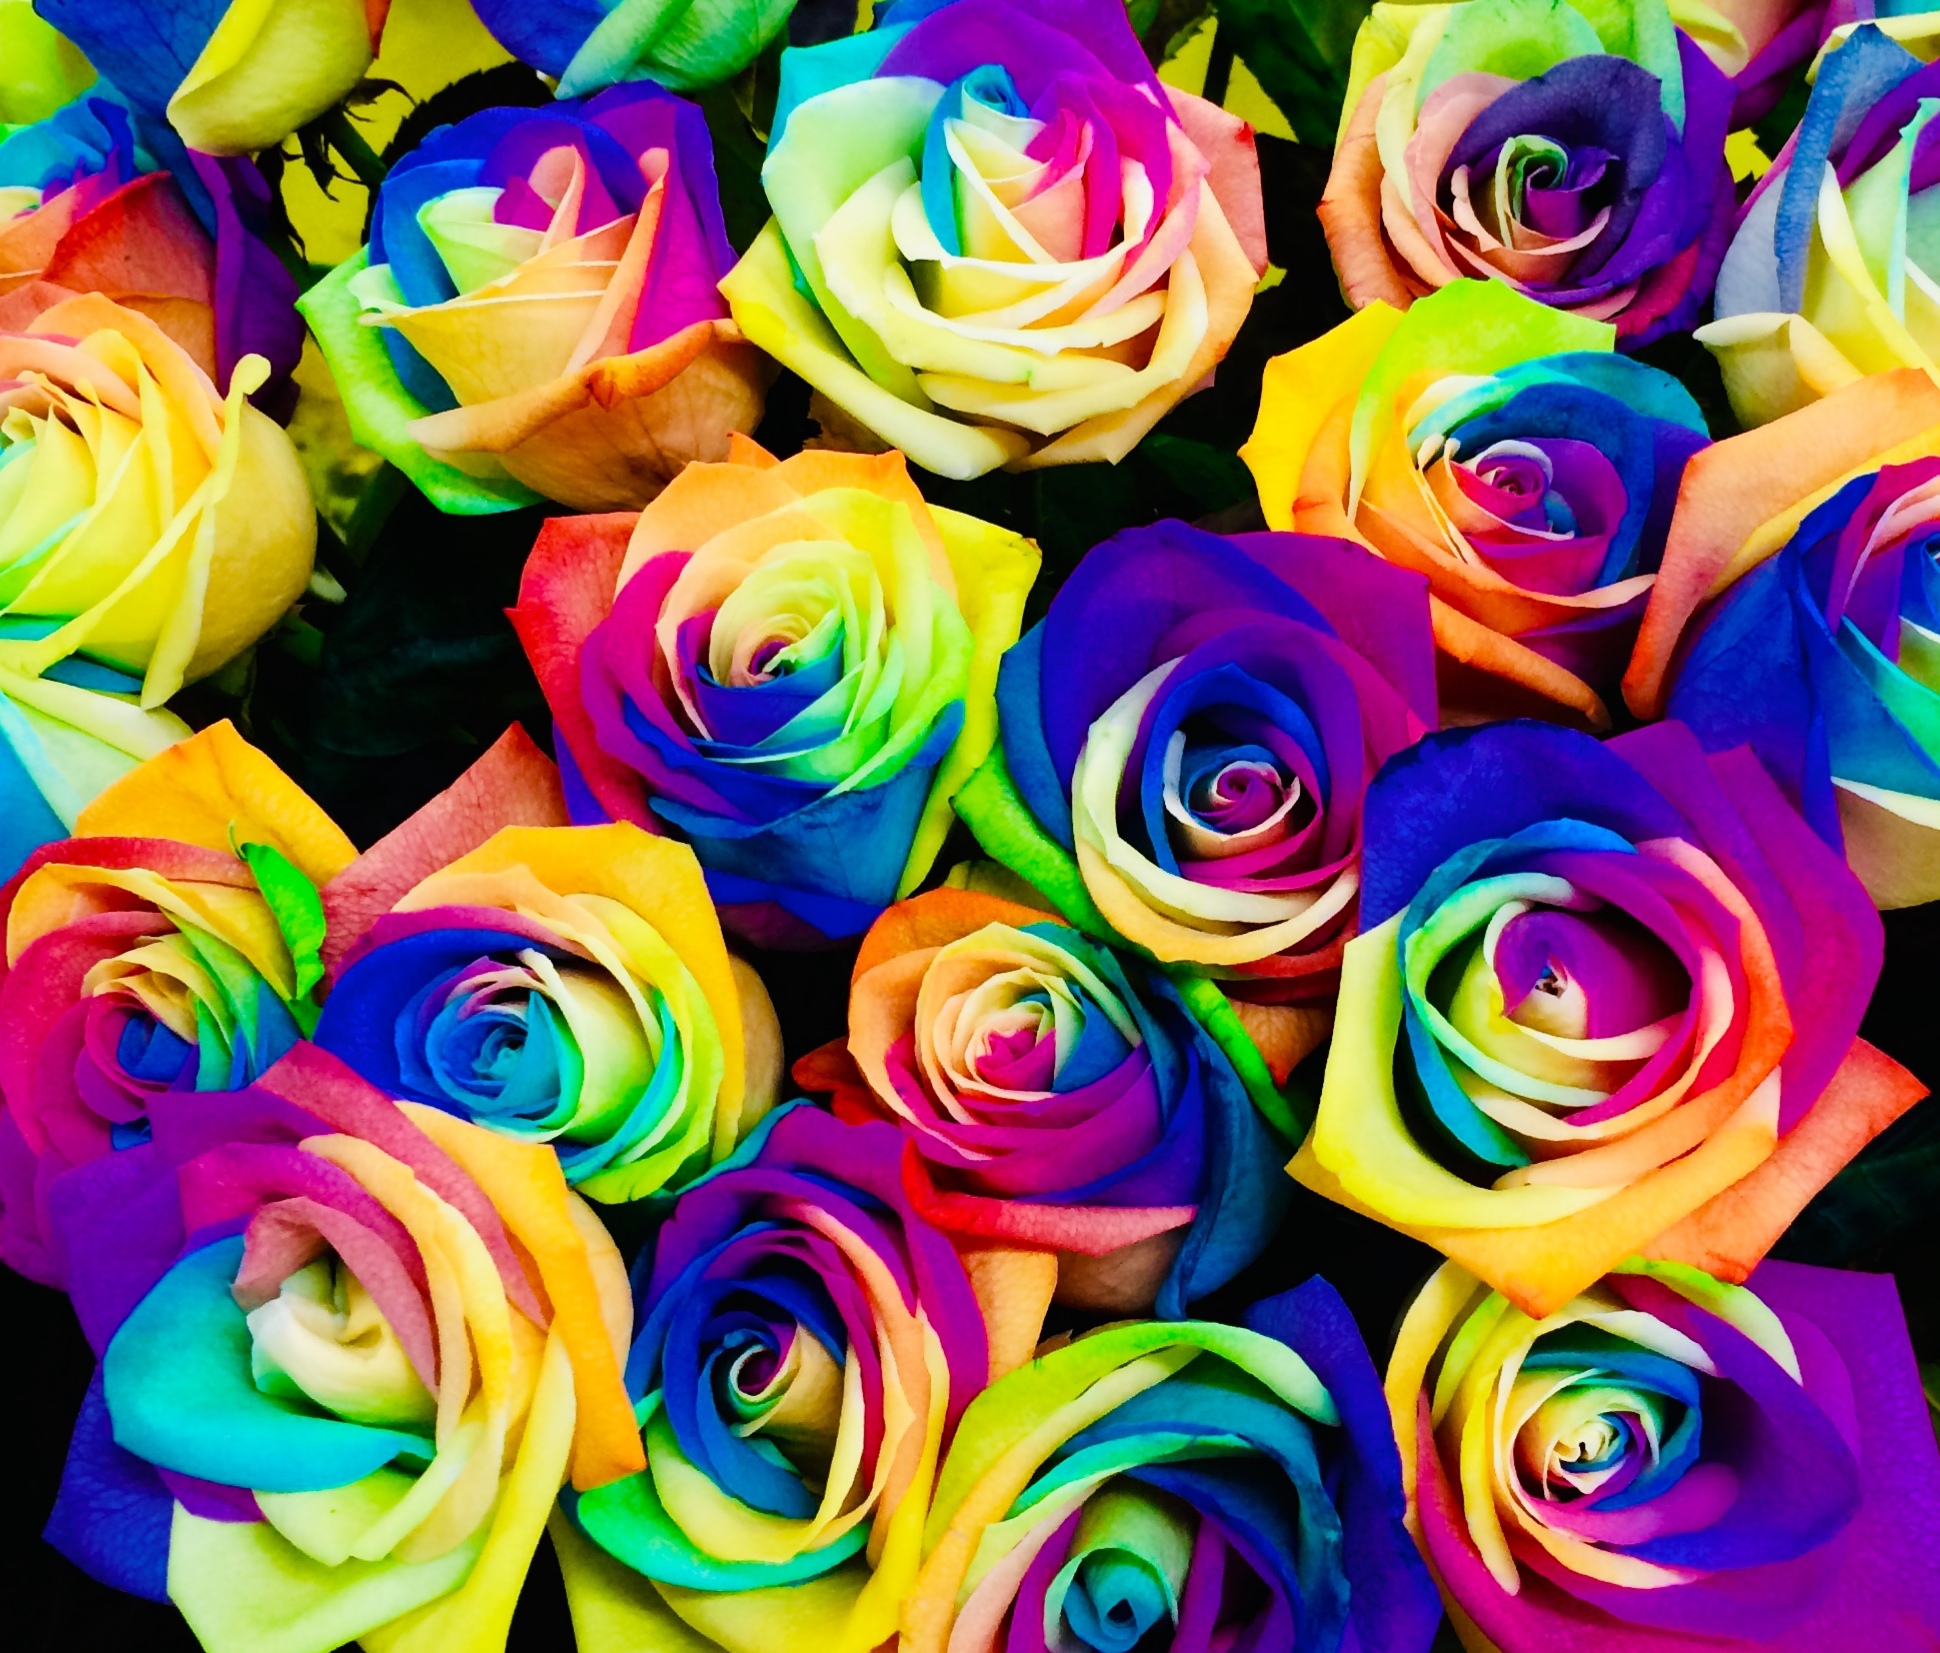 花屋 花家shinyoshi １００本バラ レインボーローズ プロポーズの花束 記念日の花束 結婚記念日の花束 特別な花束 １００本 １０８本 バラ ローズ 薔薇 七色のバラ 七色の薔薇 Rainbowrose Rainbowrose